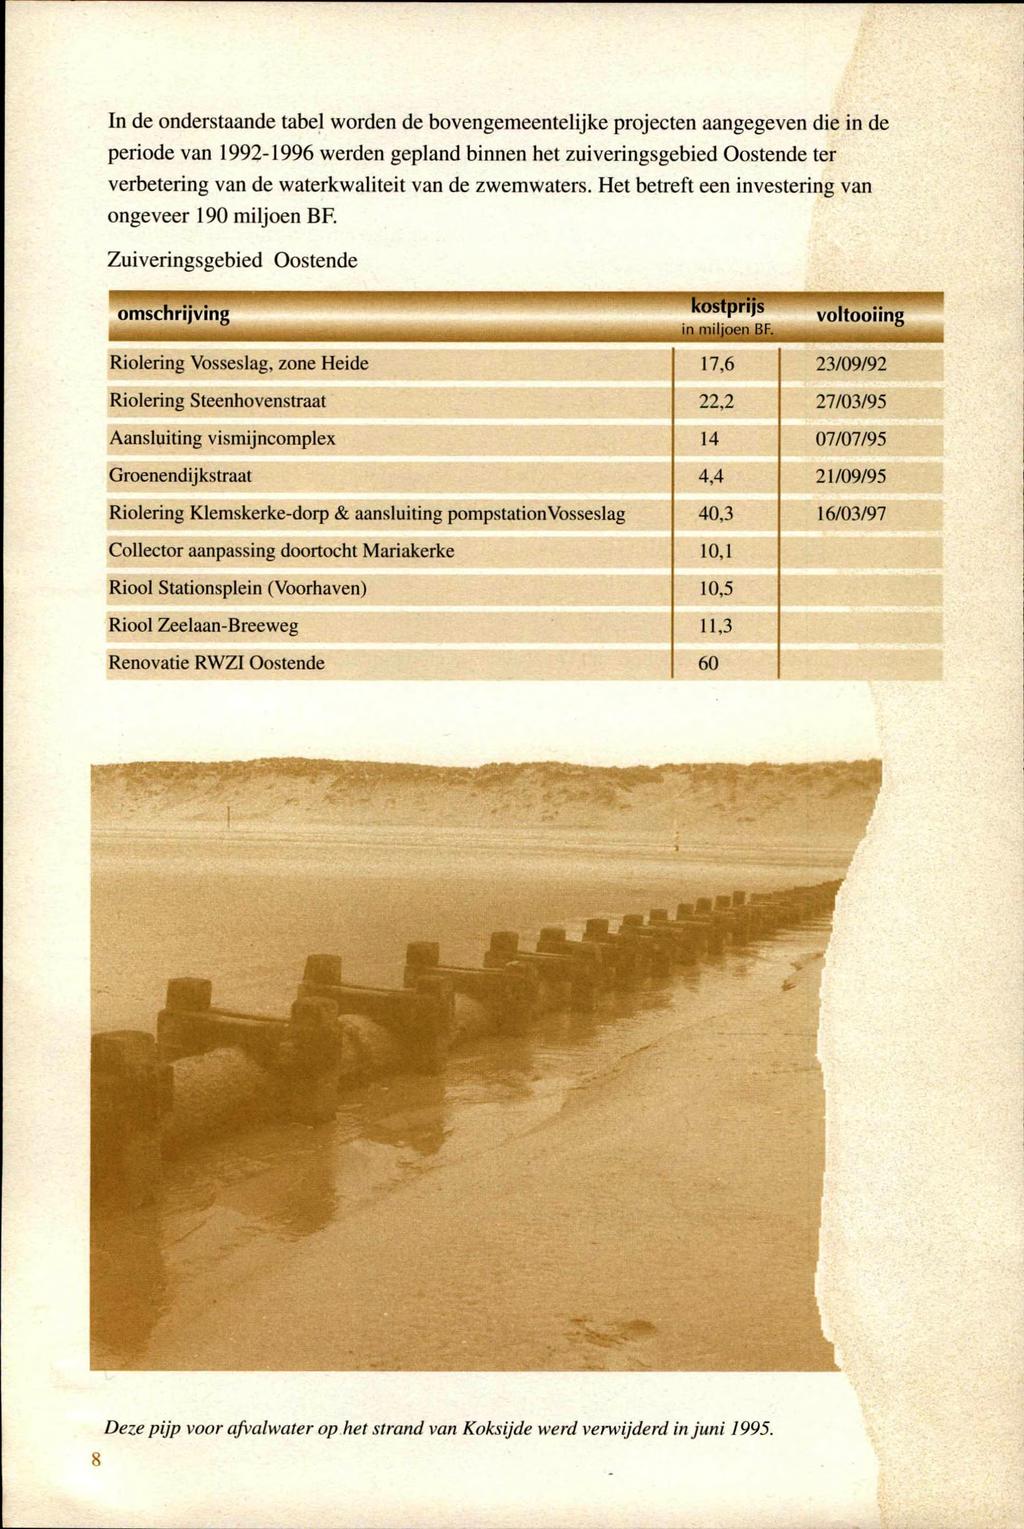 In de onderstaande tabel worden de bovengemeentelijke projecten aangegeven die in de periode van 1992-1996 werden gepland binnen het zuiveringsgebied Oostende ter verbetering van de waterkwaliteit